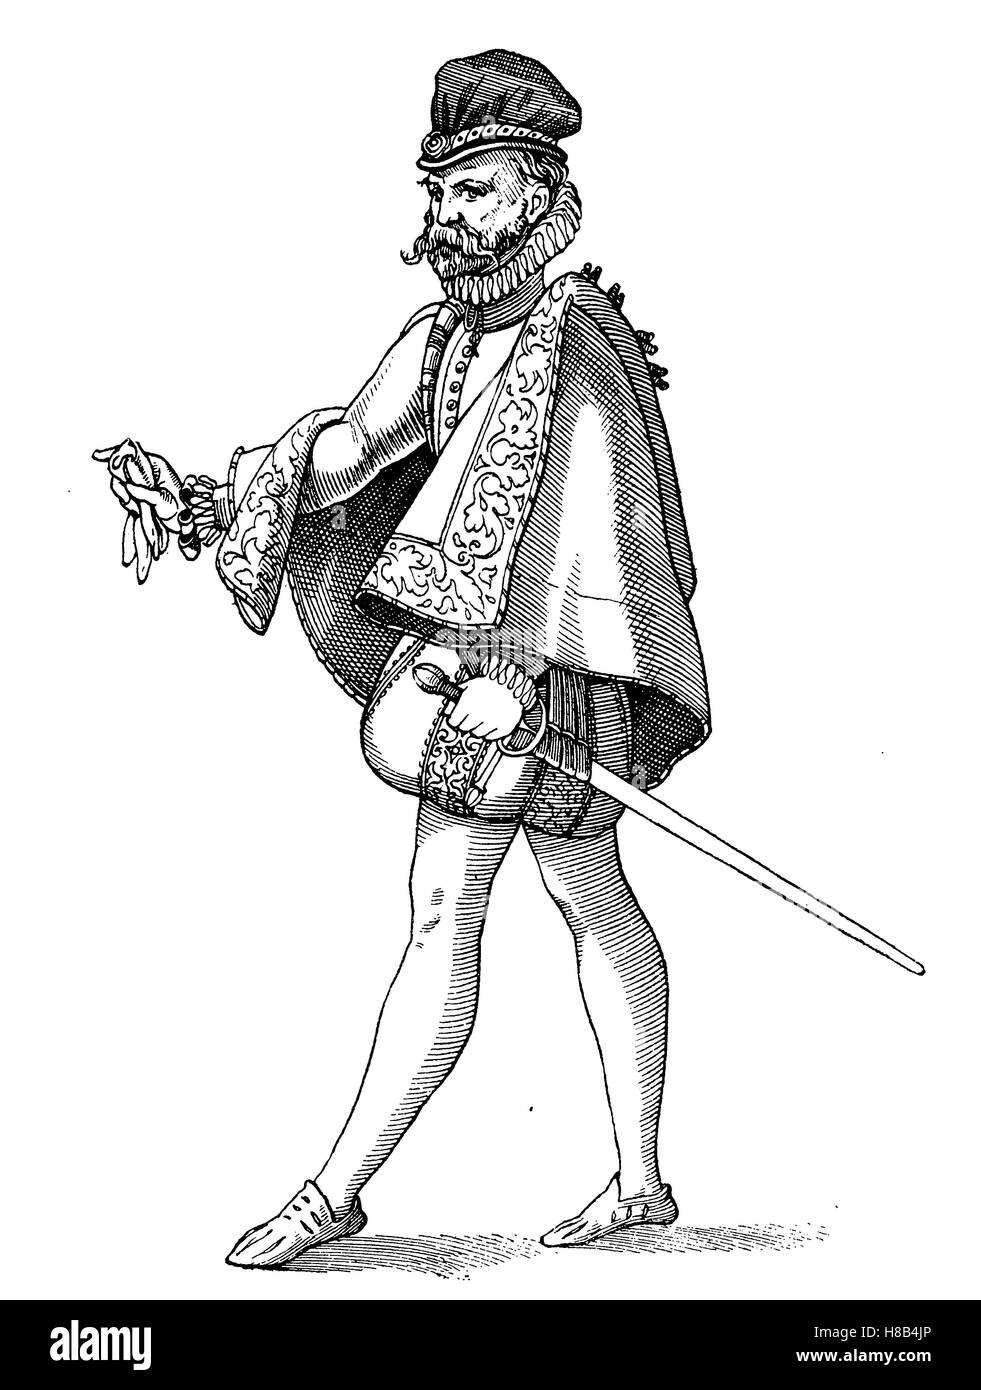 Spanischer edle um 1570, Geschichte der Mode, Kostüm Geschichte Stockfoto